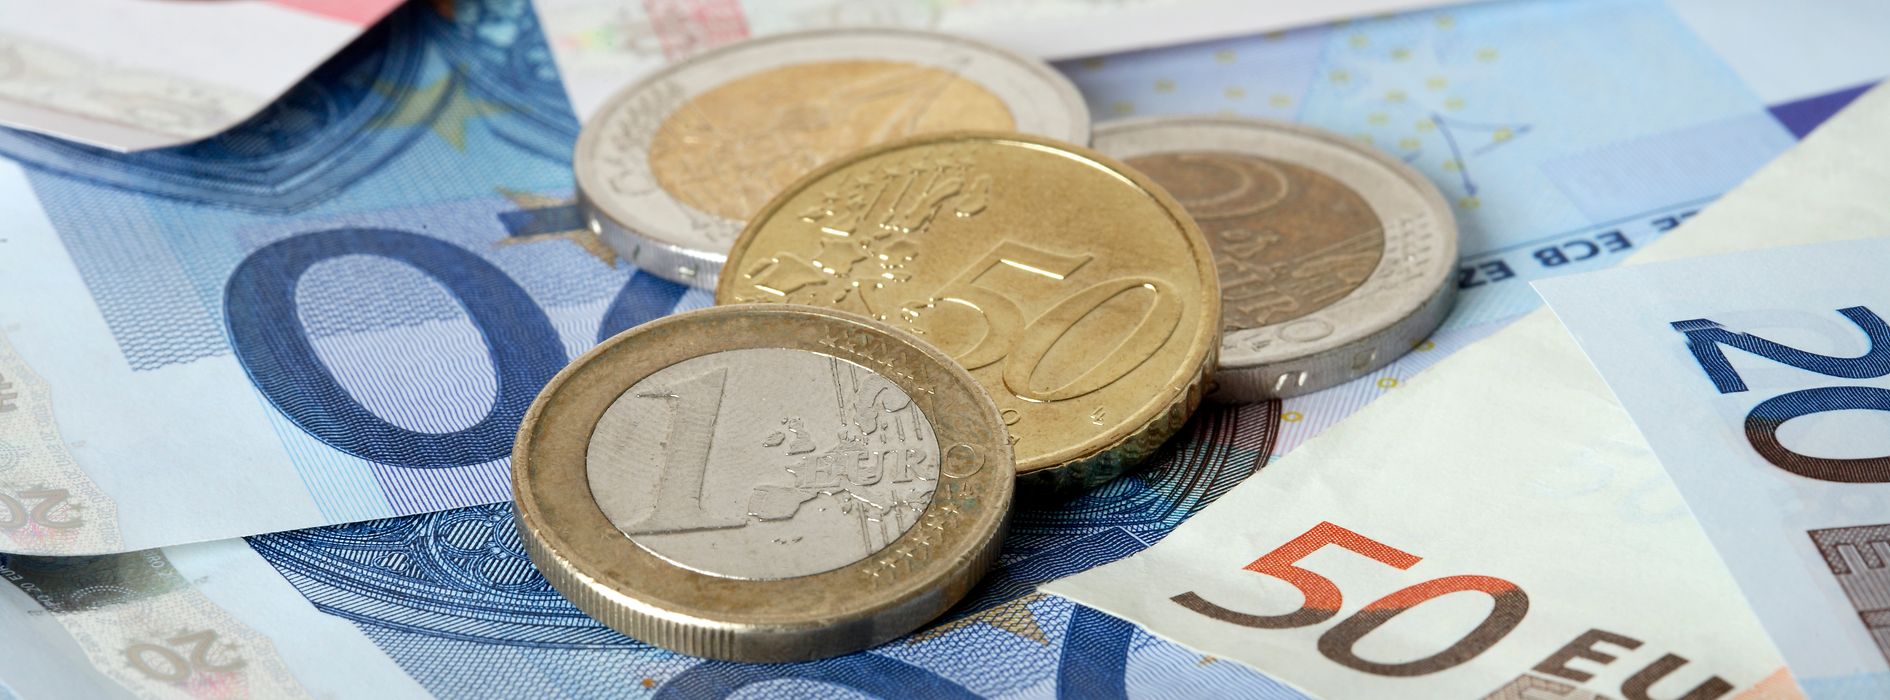 Euro in monete e banconote